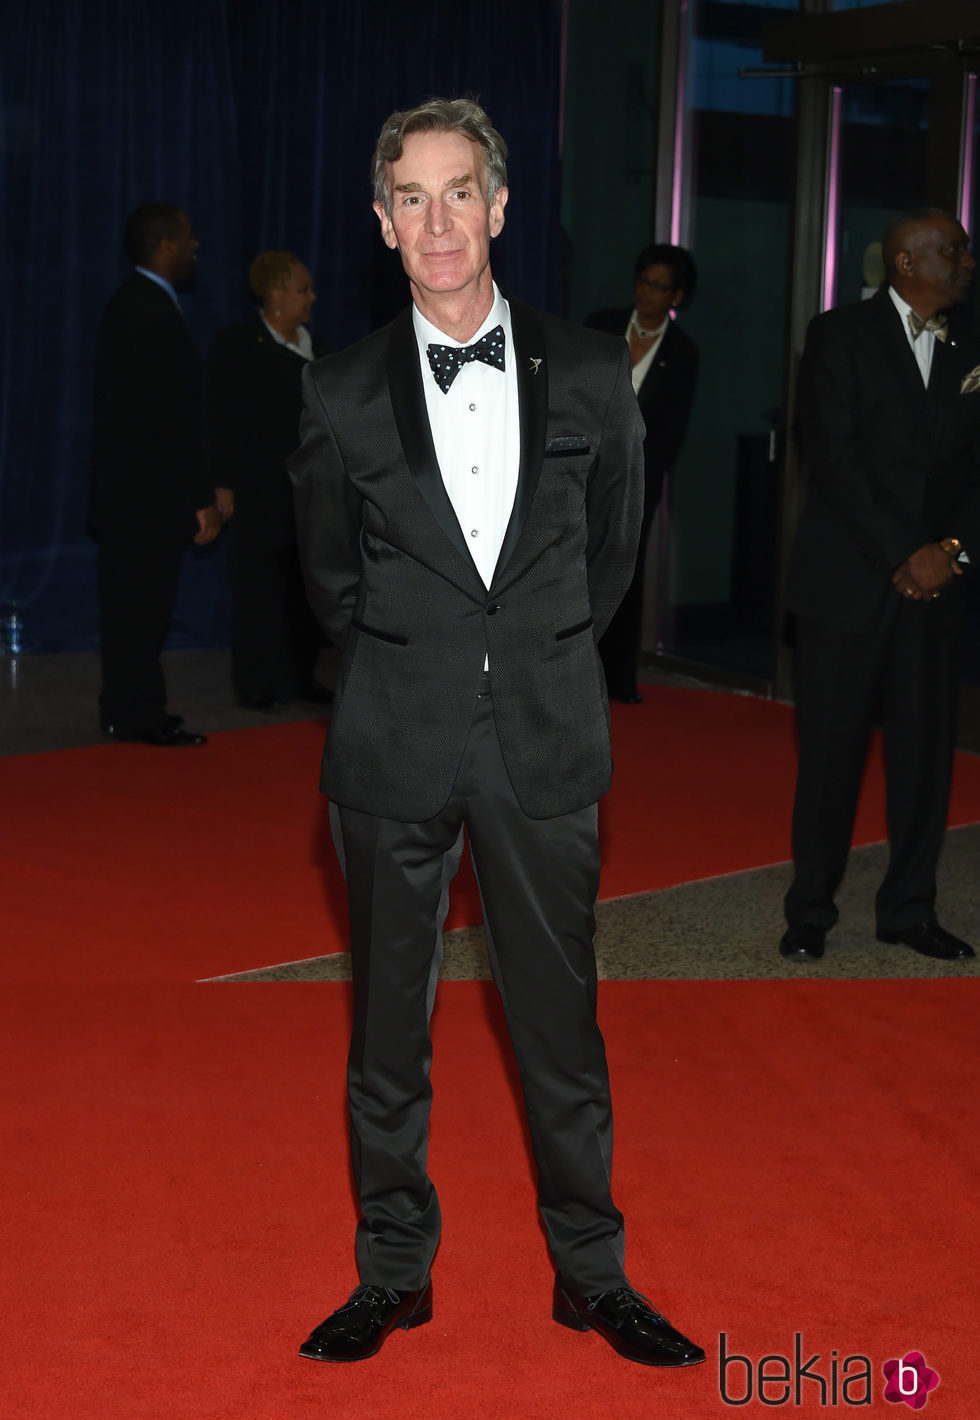 Bill Nye en la Fiesta de Corresponsales 2016 en la Casa Blanca